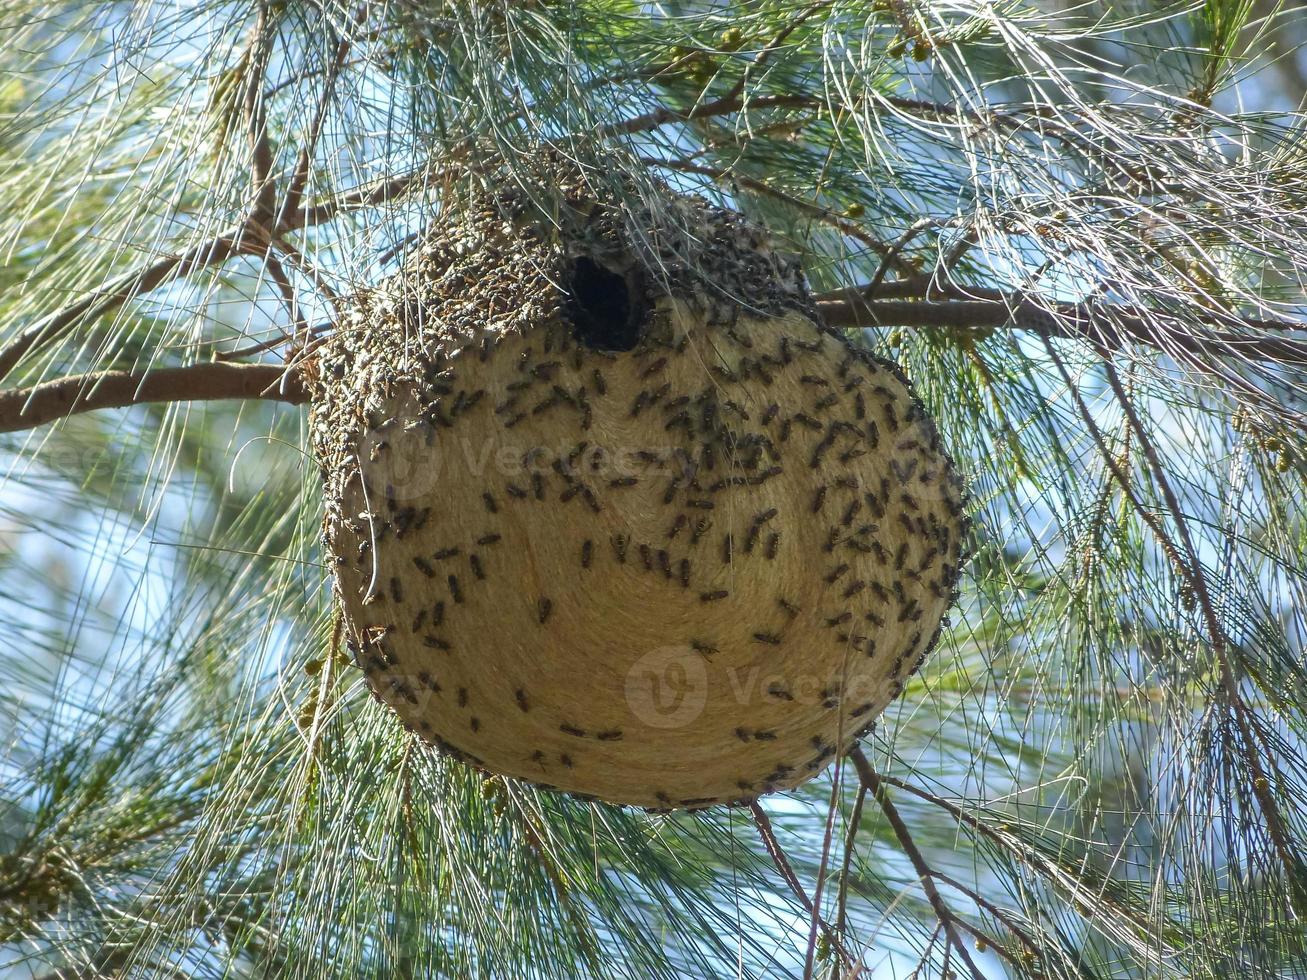 grote honingraat van wespen die in een boom hangt foto